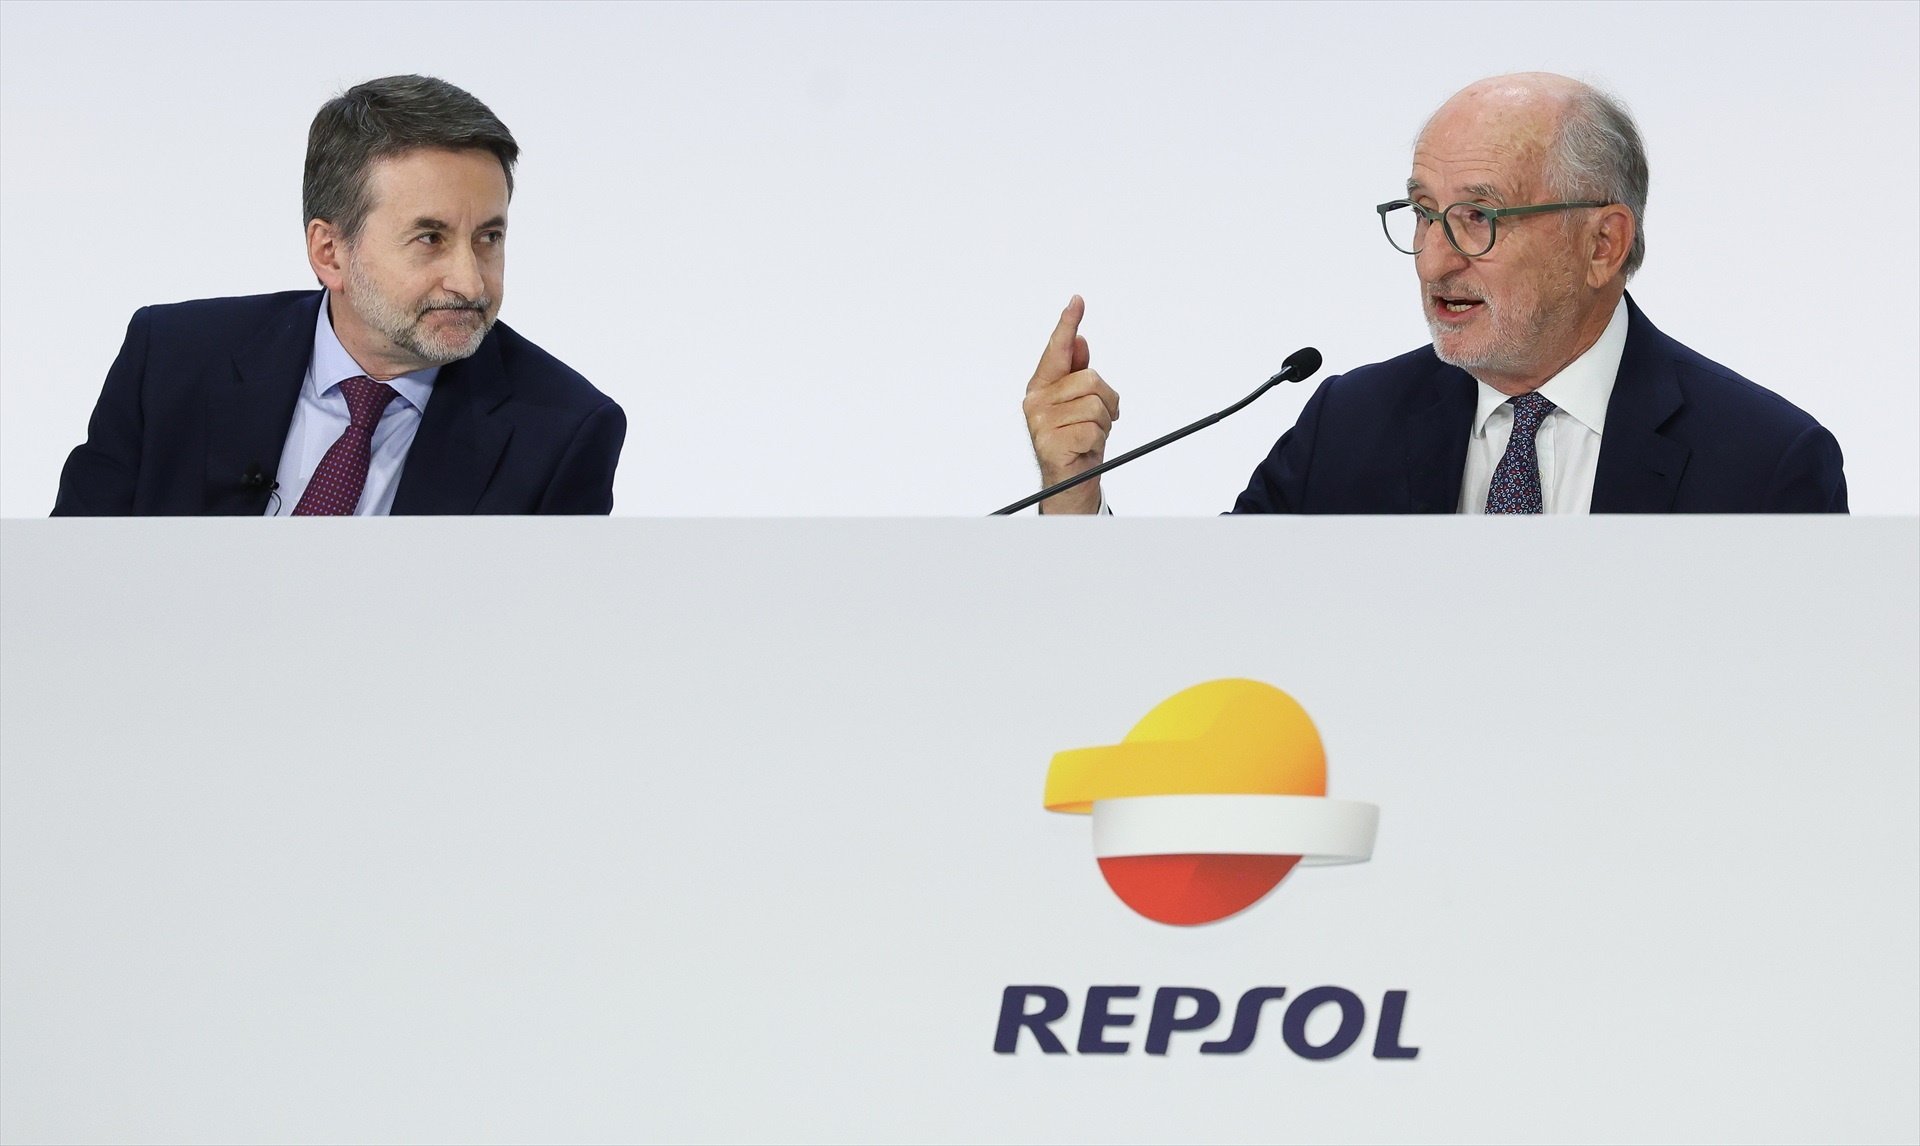 El CEO de Repsol, Josu Jon Imaz y el presidente de Repsol, Antonio Brufau